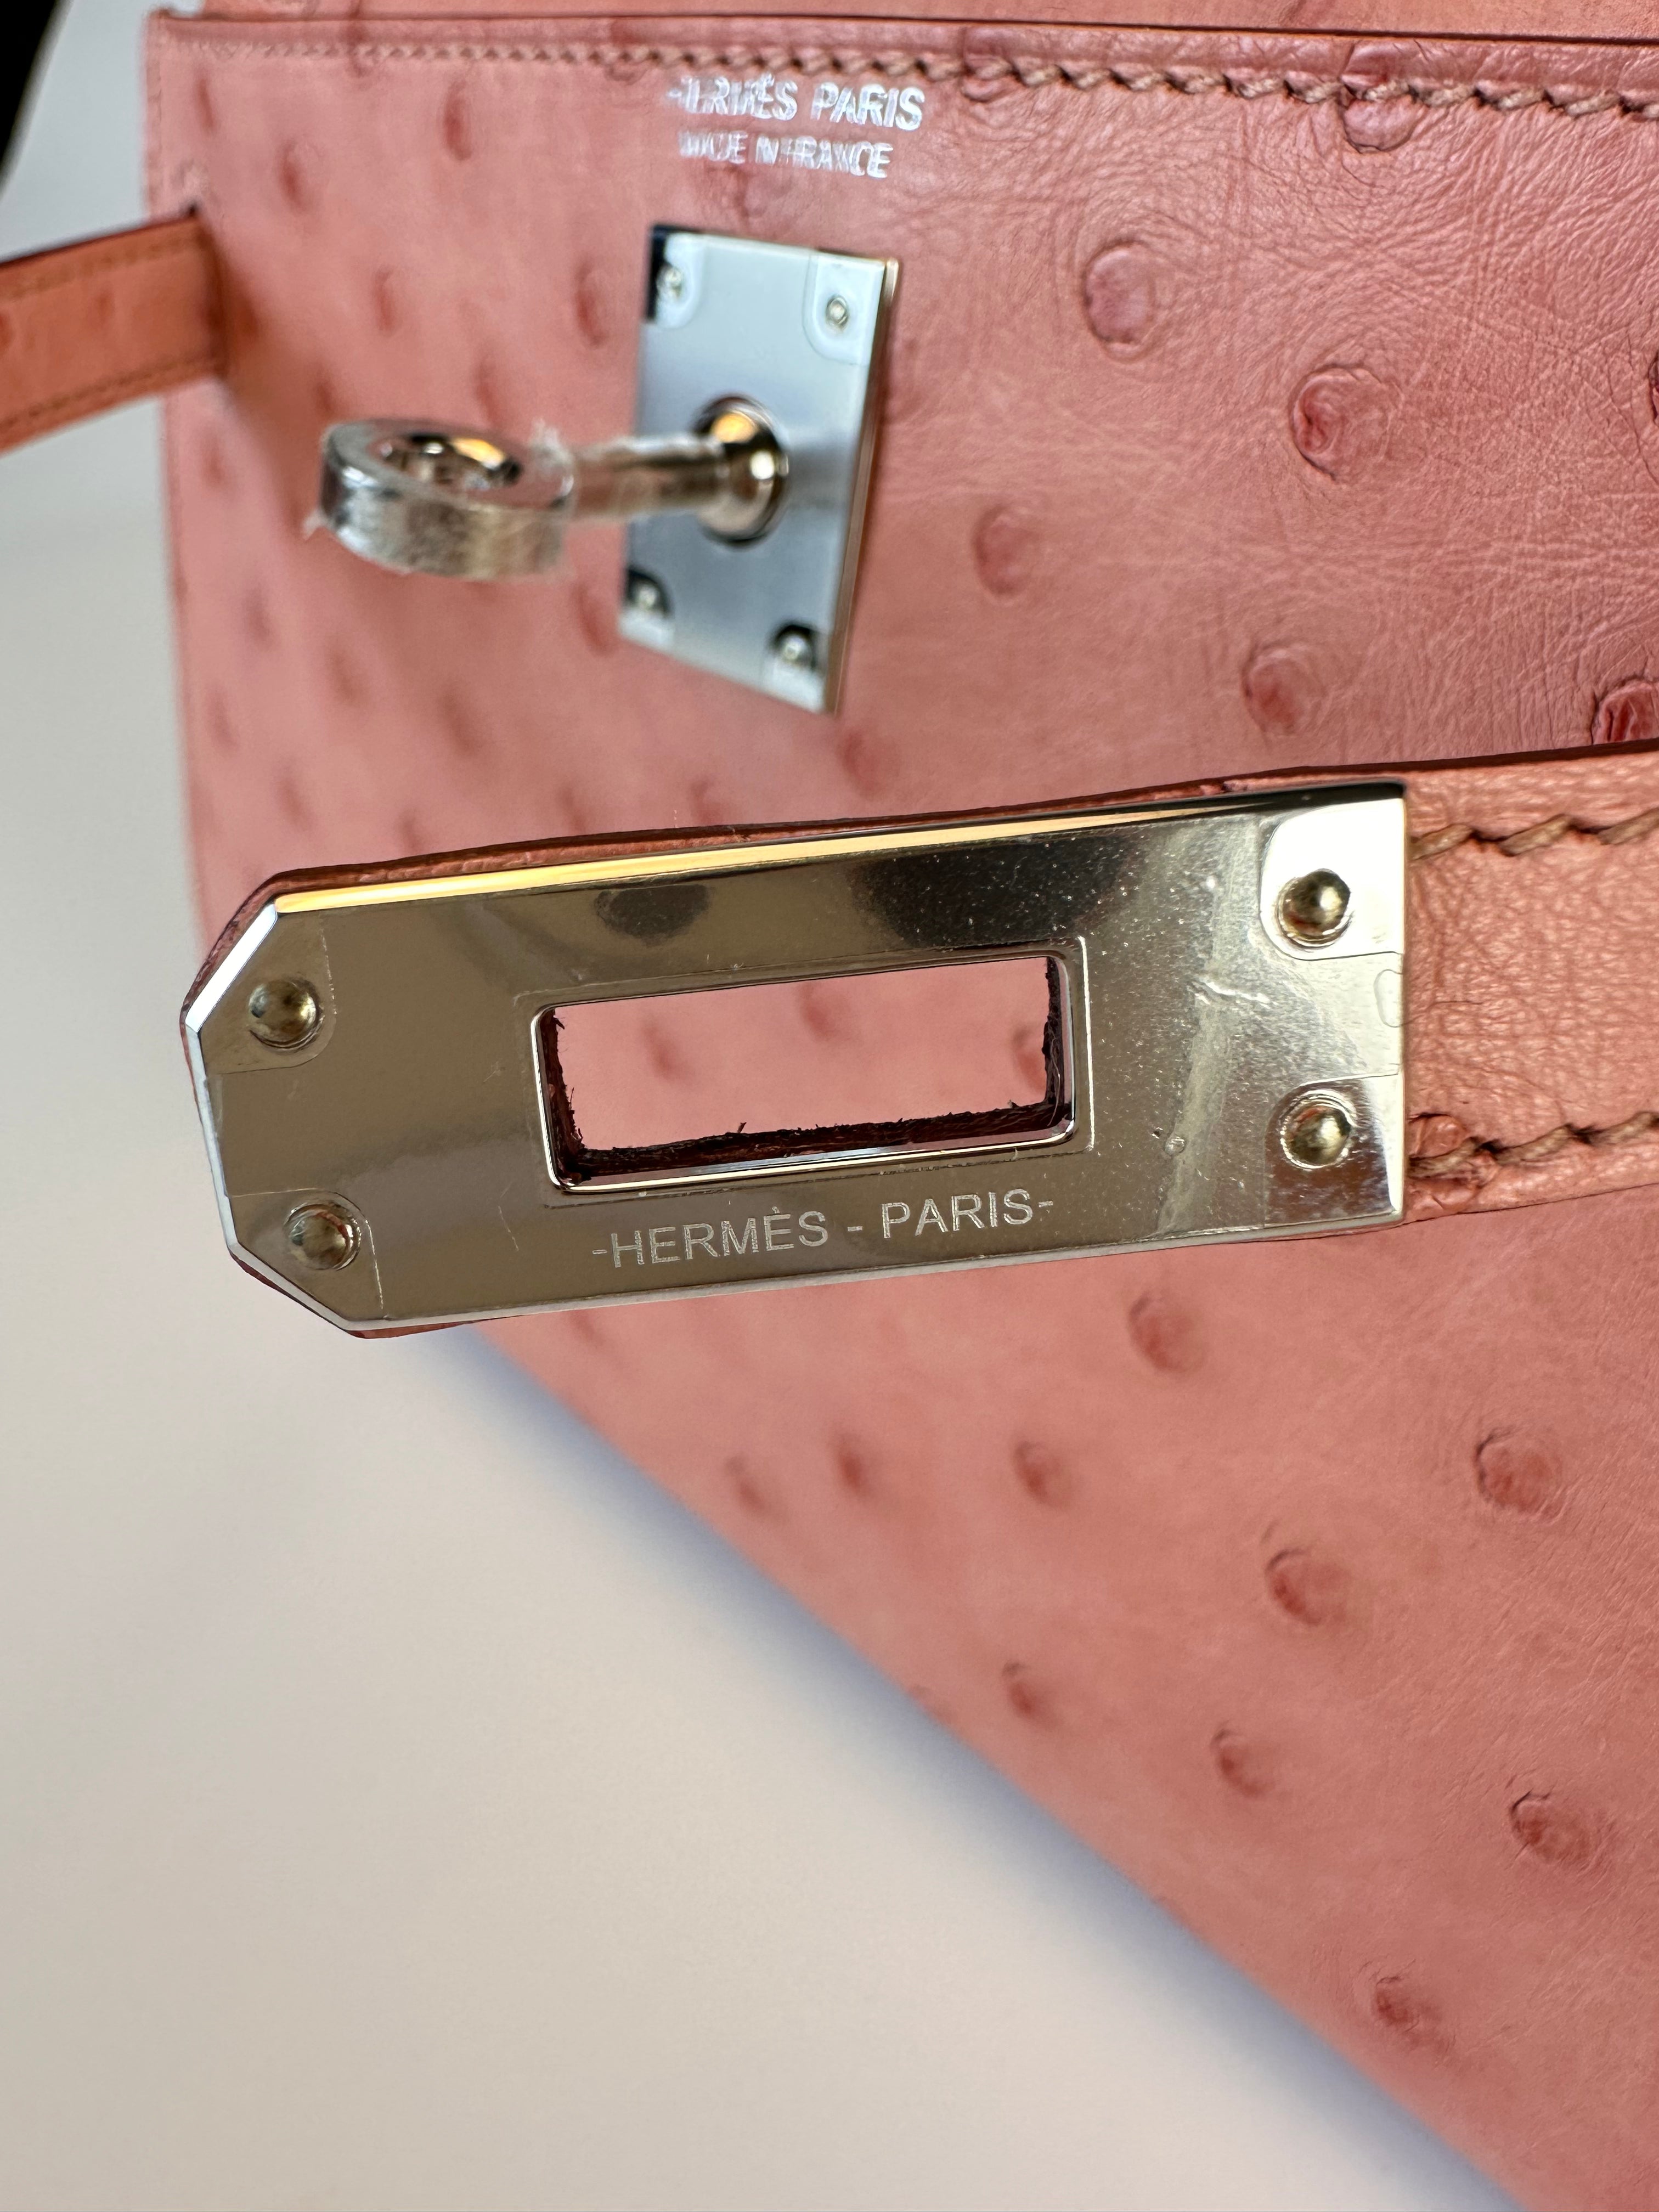 Hermes Kelly Sellier 25 Terre Cuite Handbag